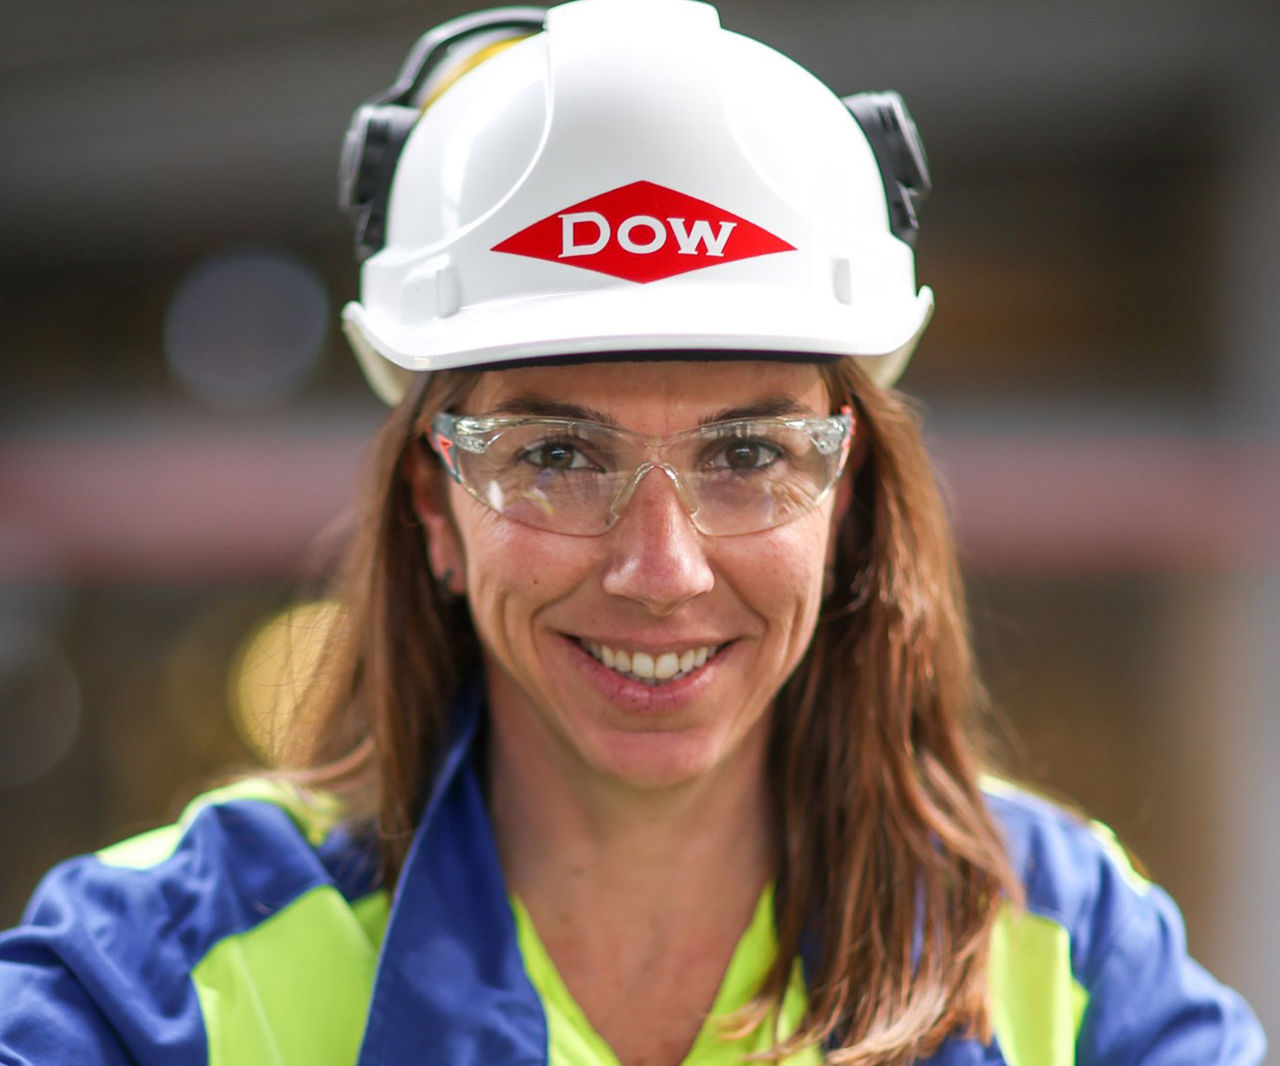 female worker in Dow hard hat